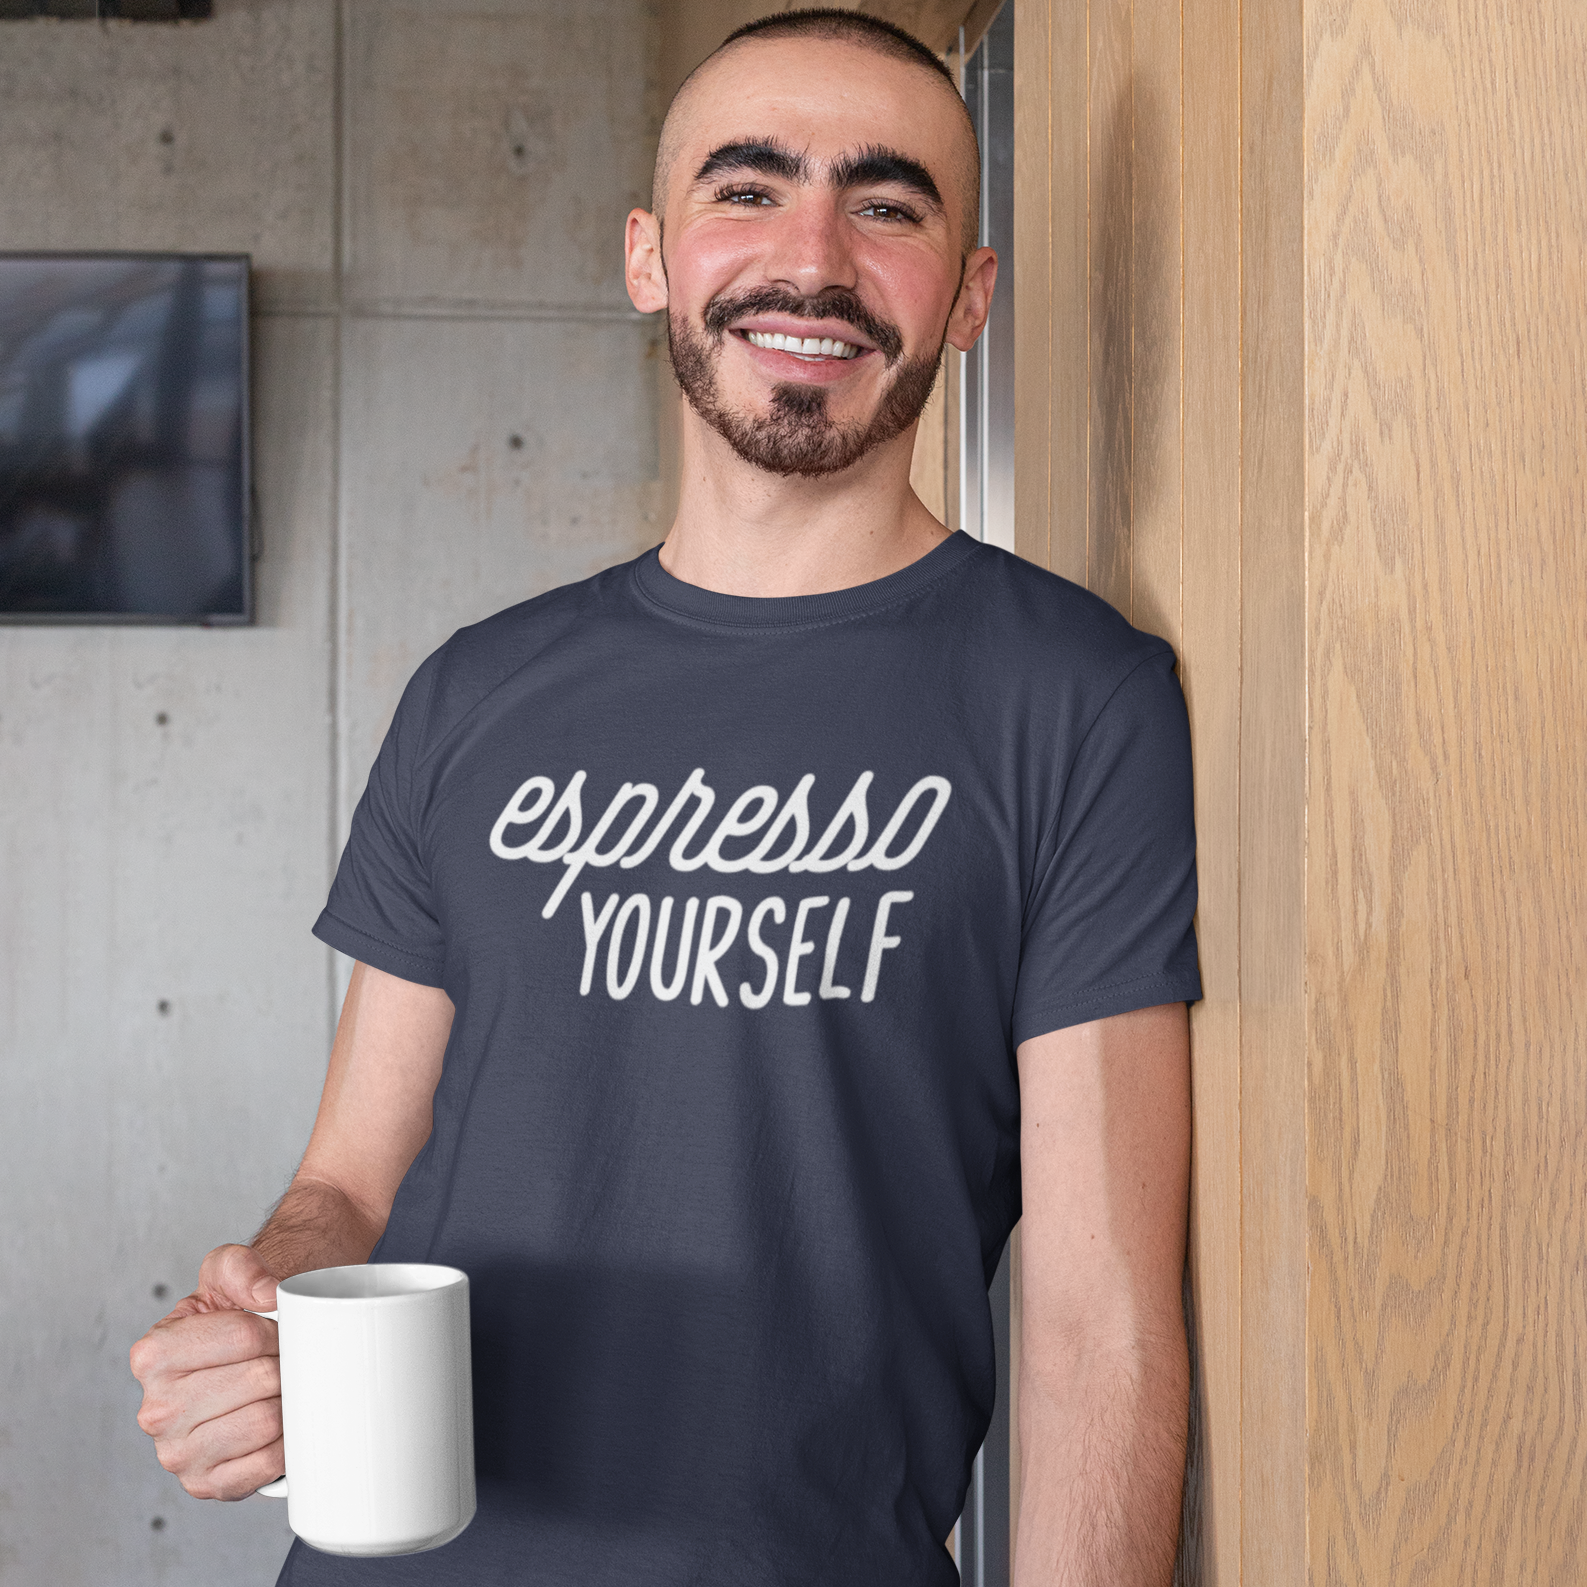 'Espresso yourself' volwassene shirt